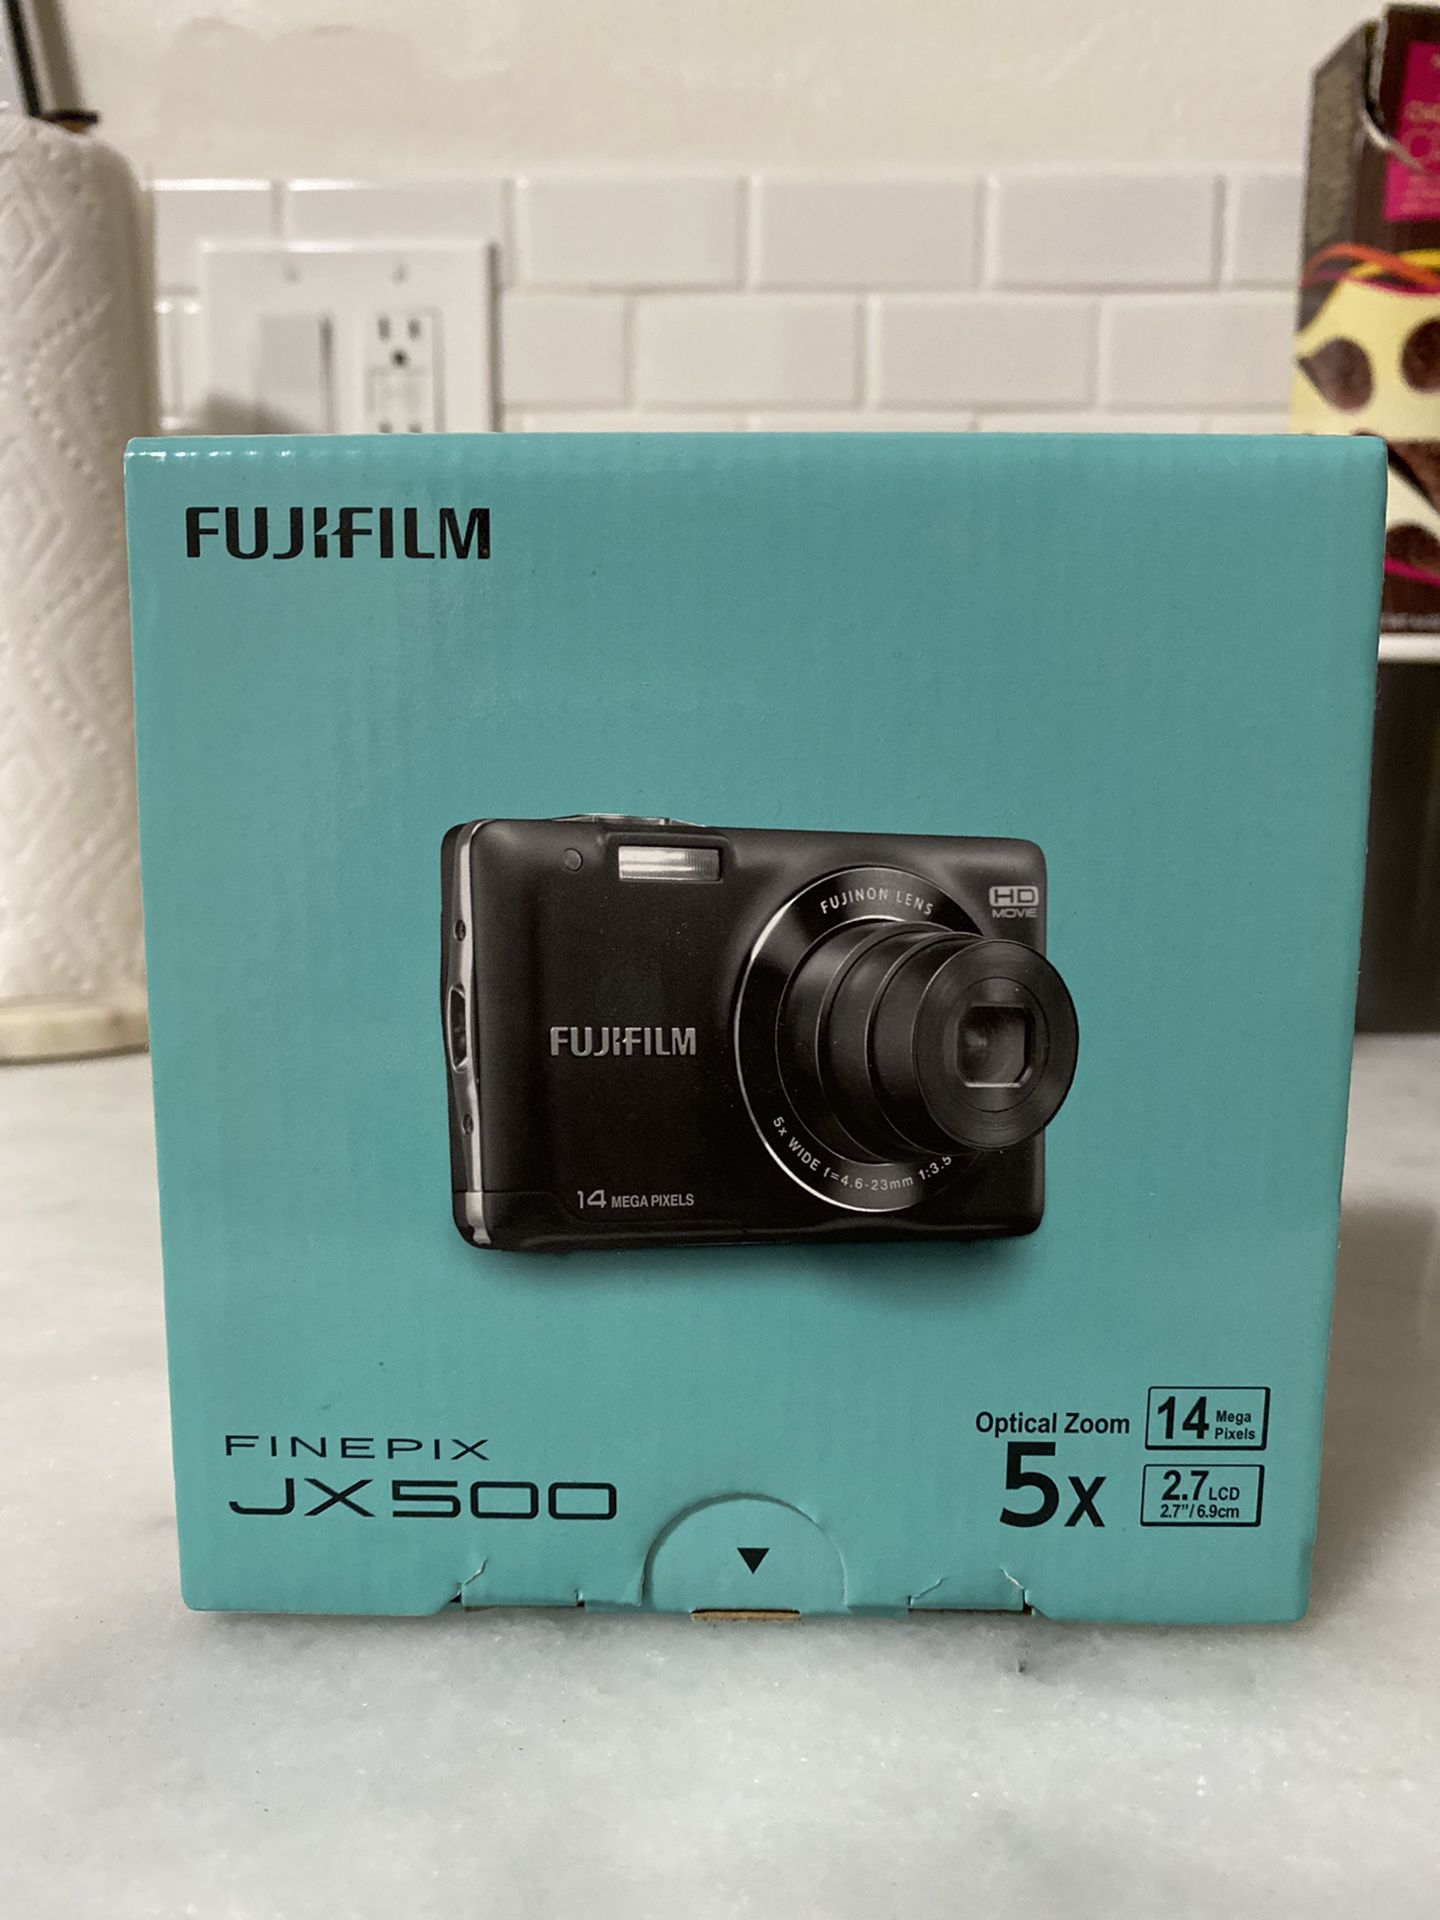 Fujifilm FinePix JX500 Digital Camera (Black) BRAND NEW IN BOX!!